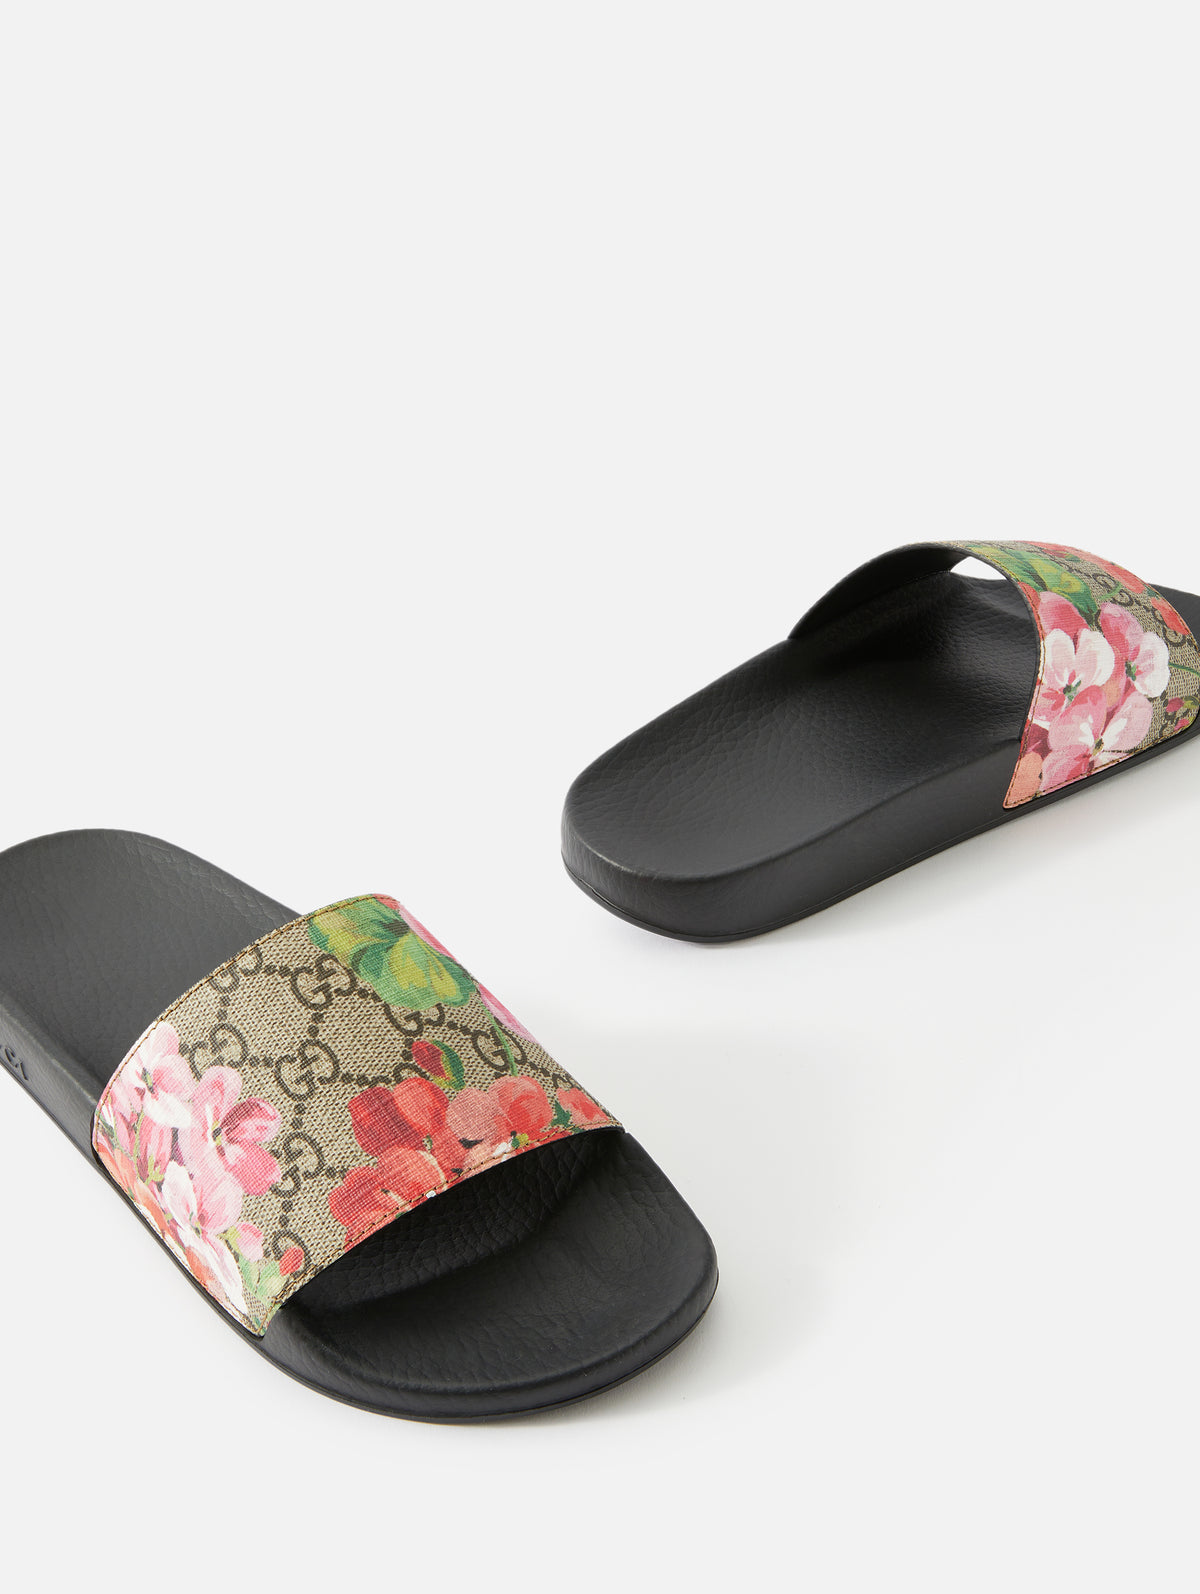 Gucci GG Blooms Supreme Slide Sandal